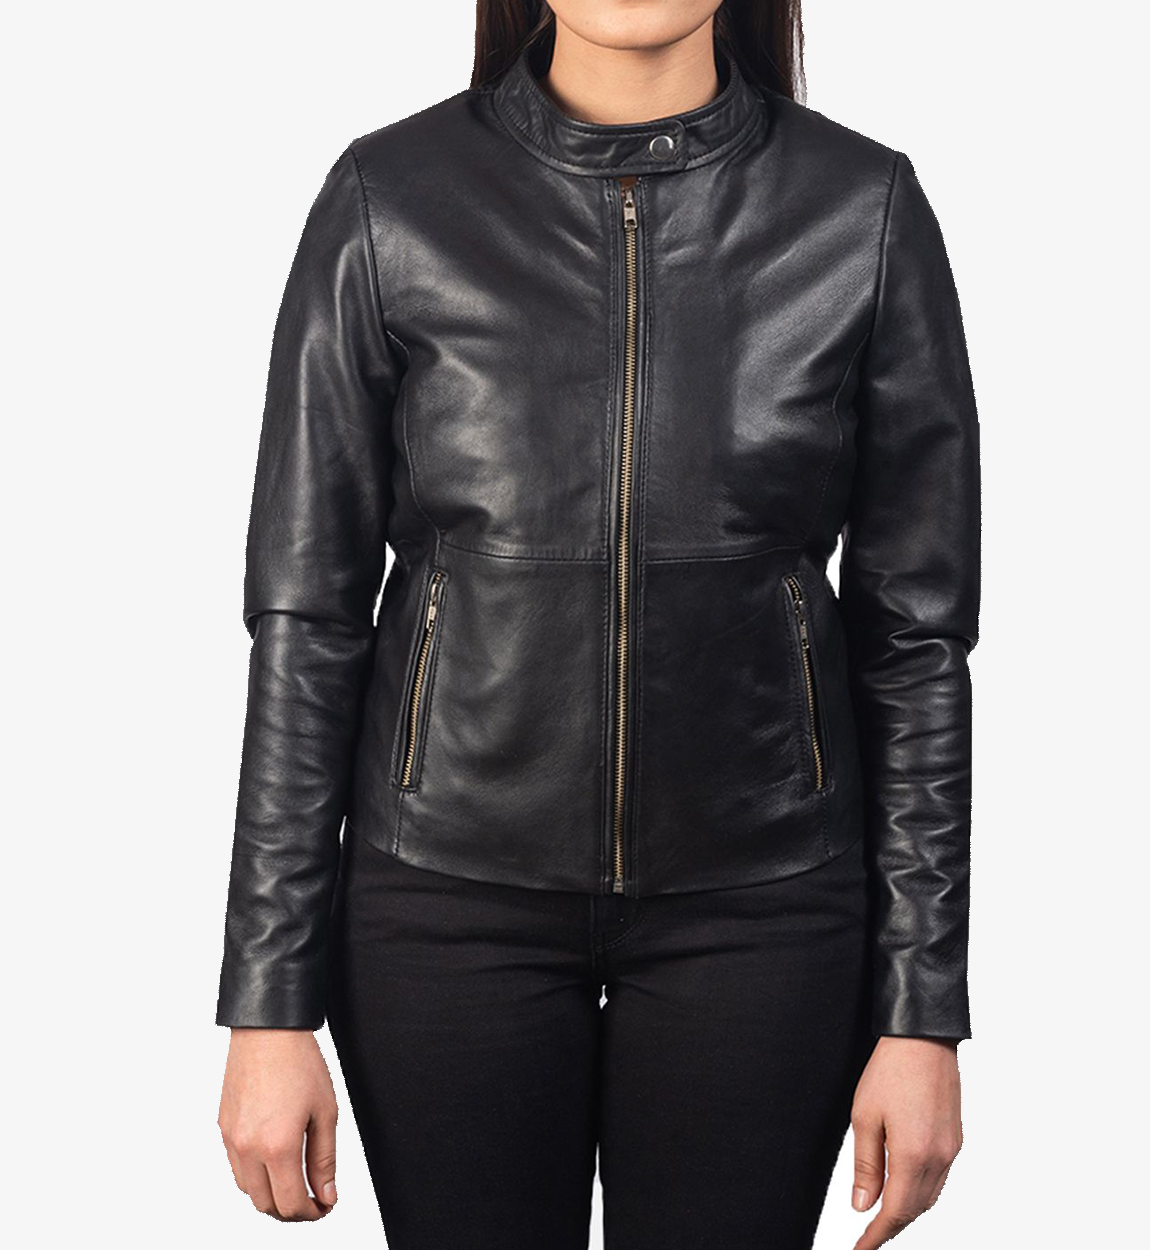 Women's Black Biker Plain Leather Jacket